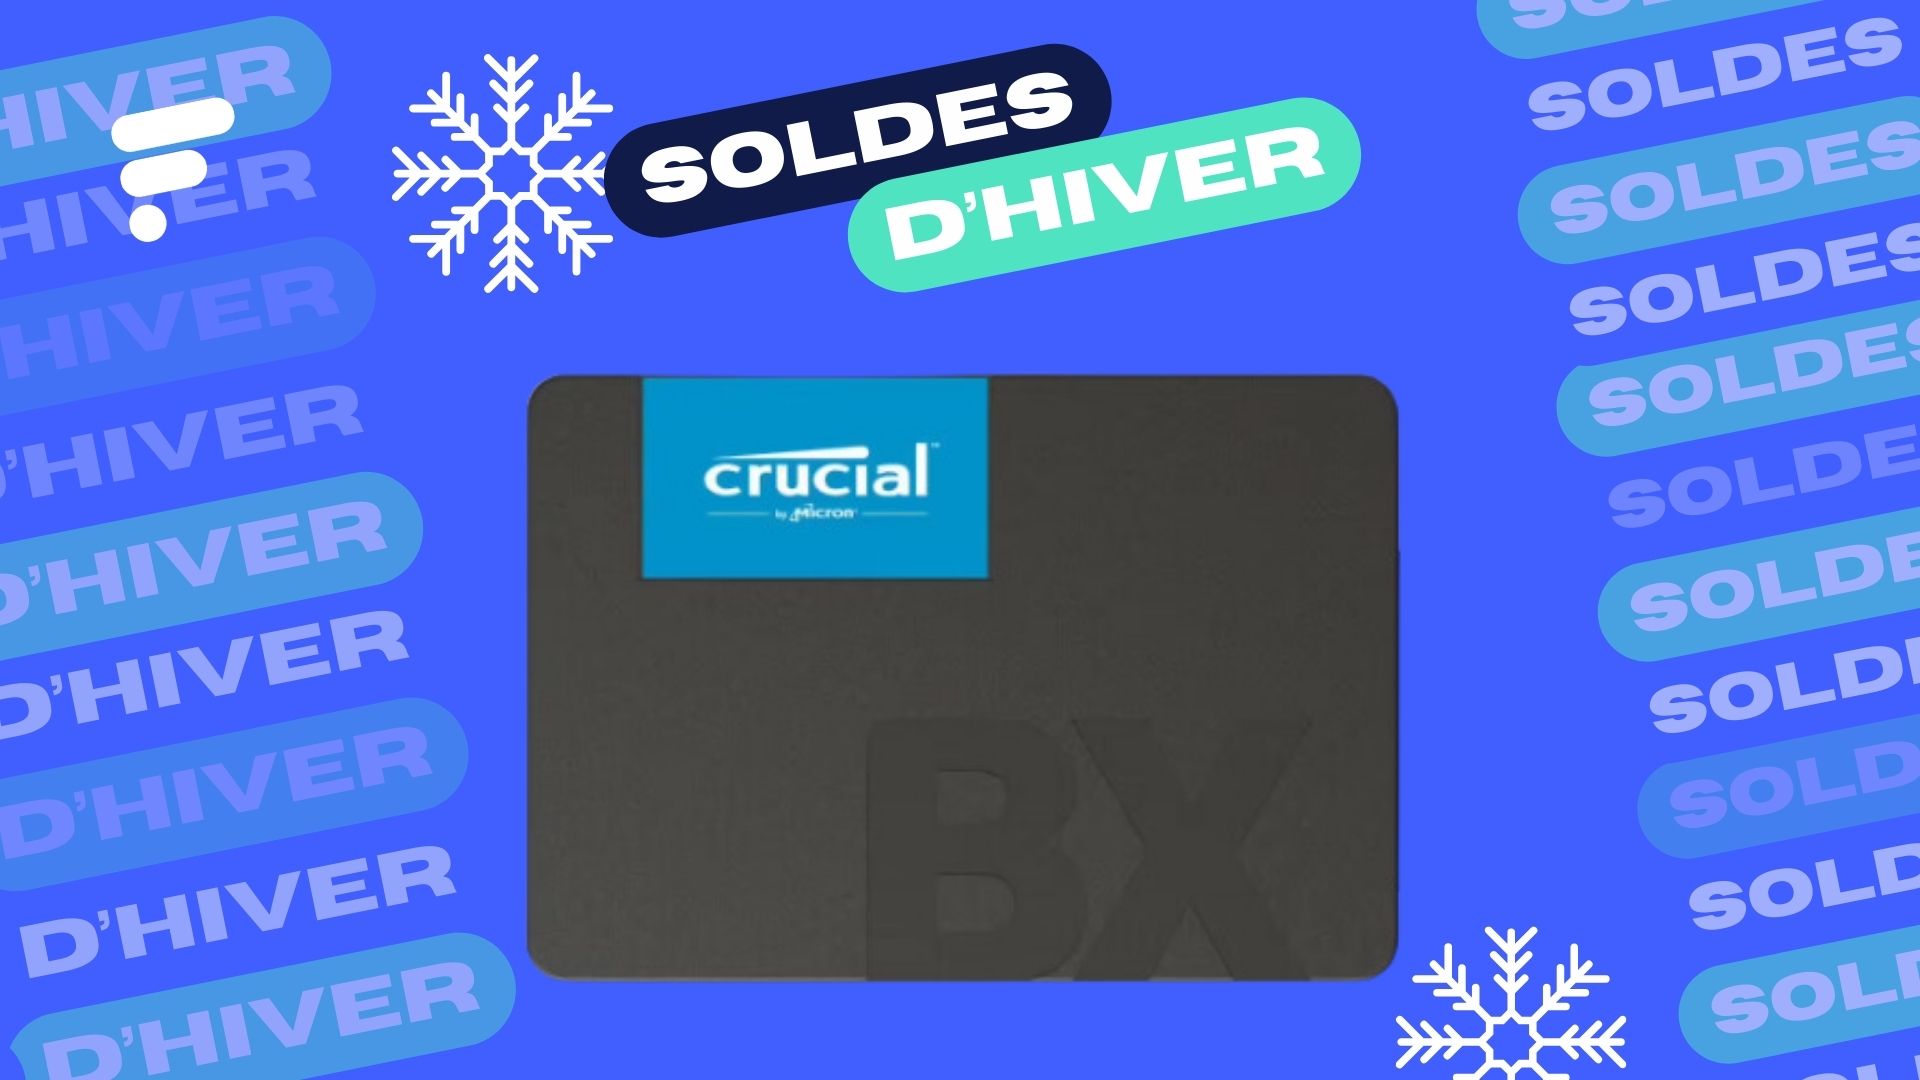 Le SSD Crucial BX500 1 To est disponible à tout petit prix chez